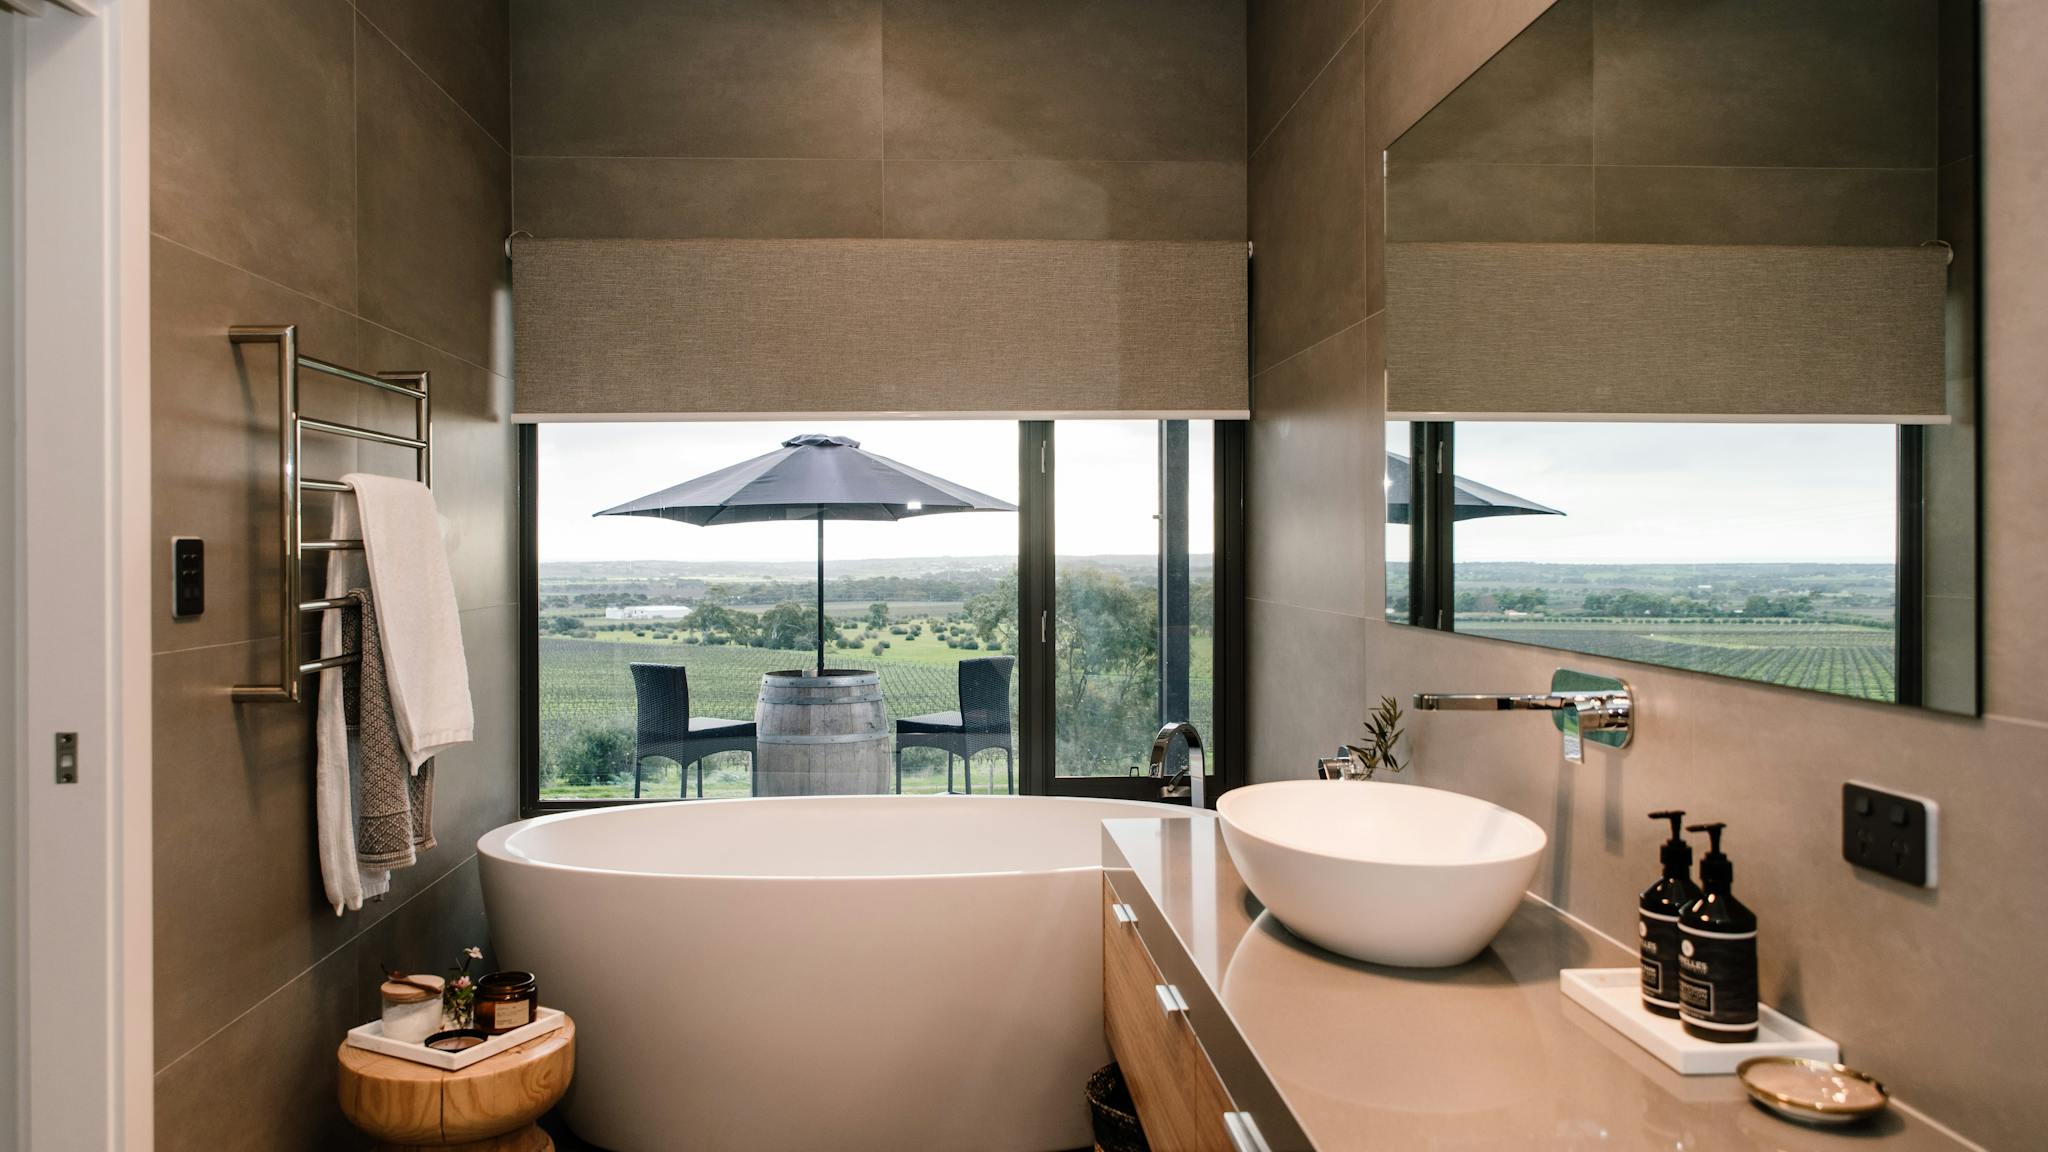 Bath tub vineyard bathroom